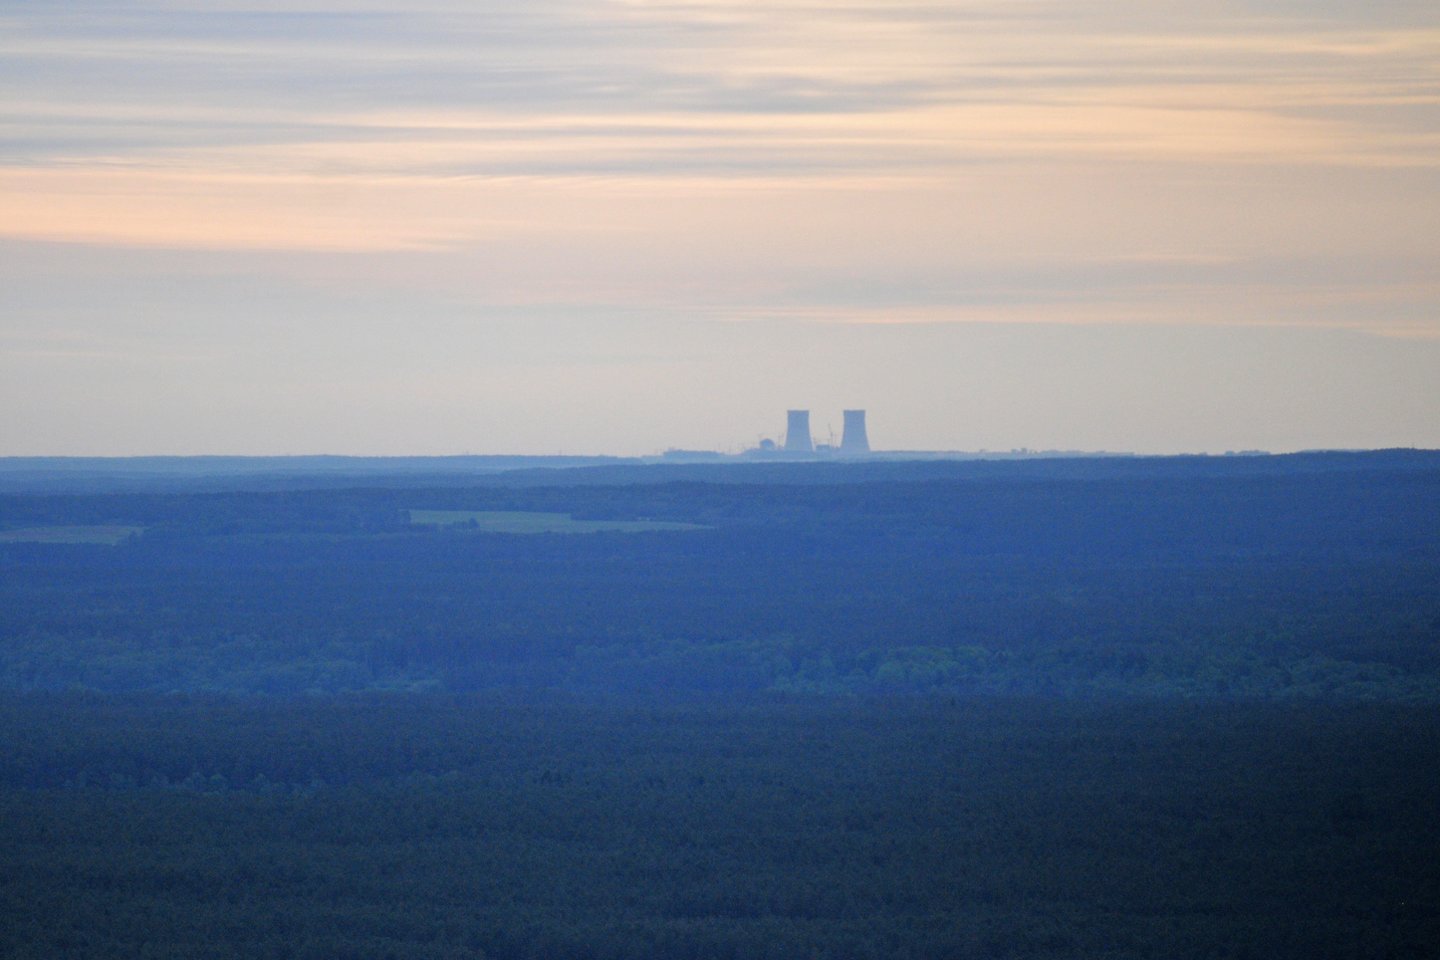 Astravo AE pirmasis energijos blokas vėl įjungtas į Baltarusijos energetikos sistemą.<br>A.Vaitkevičiaus nuotr.